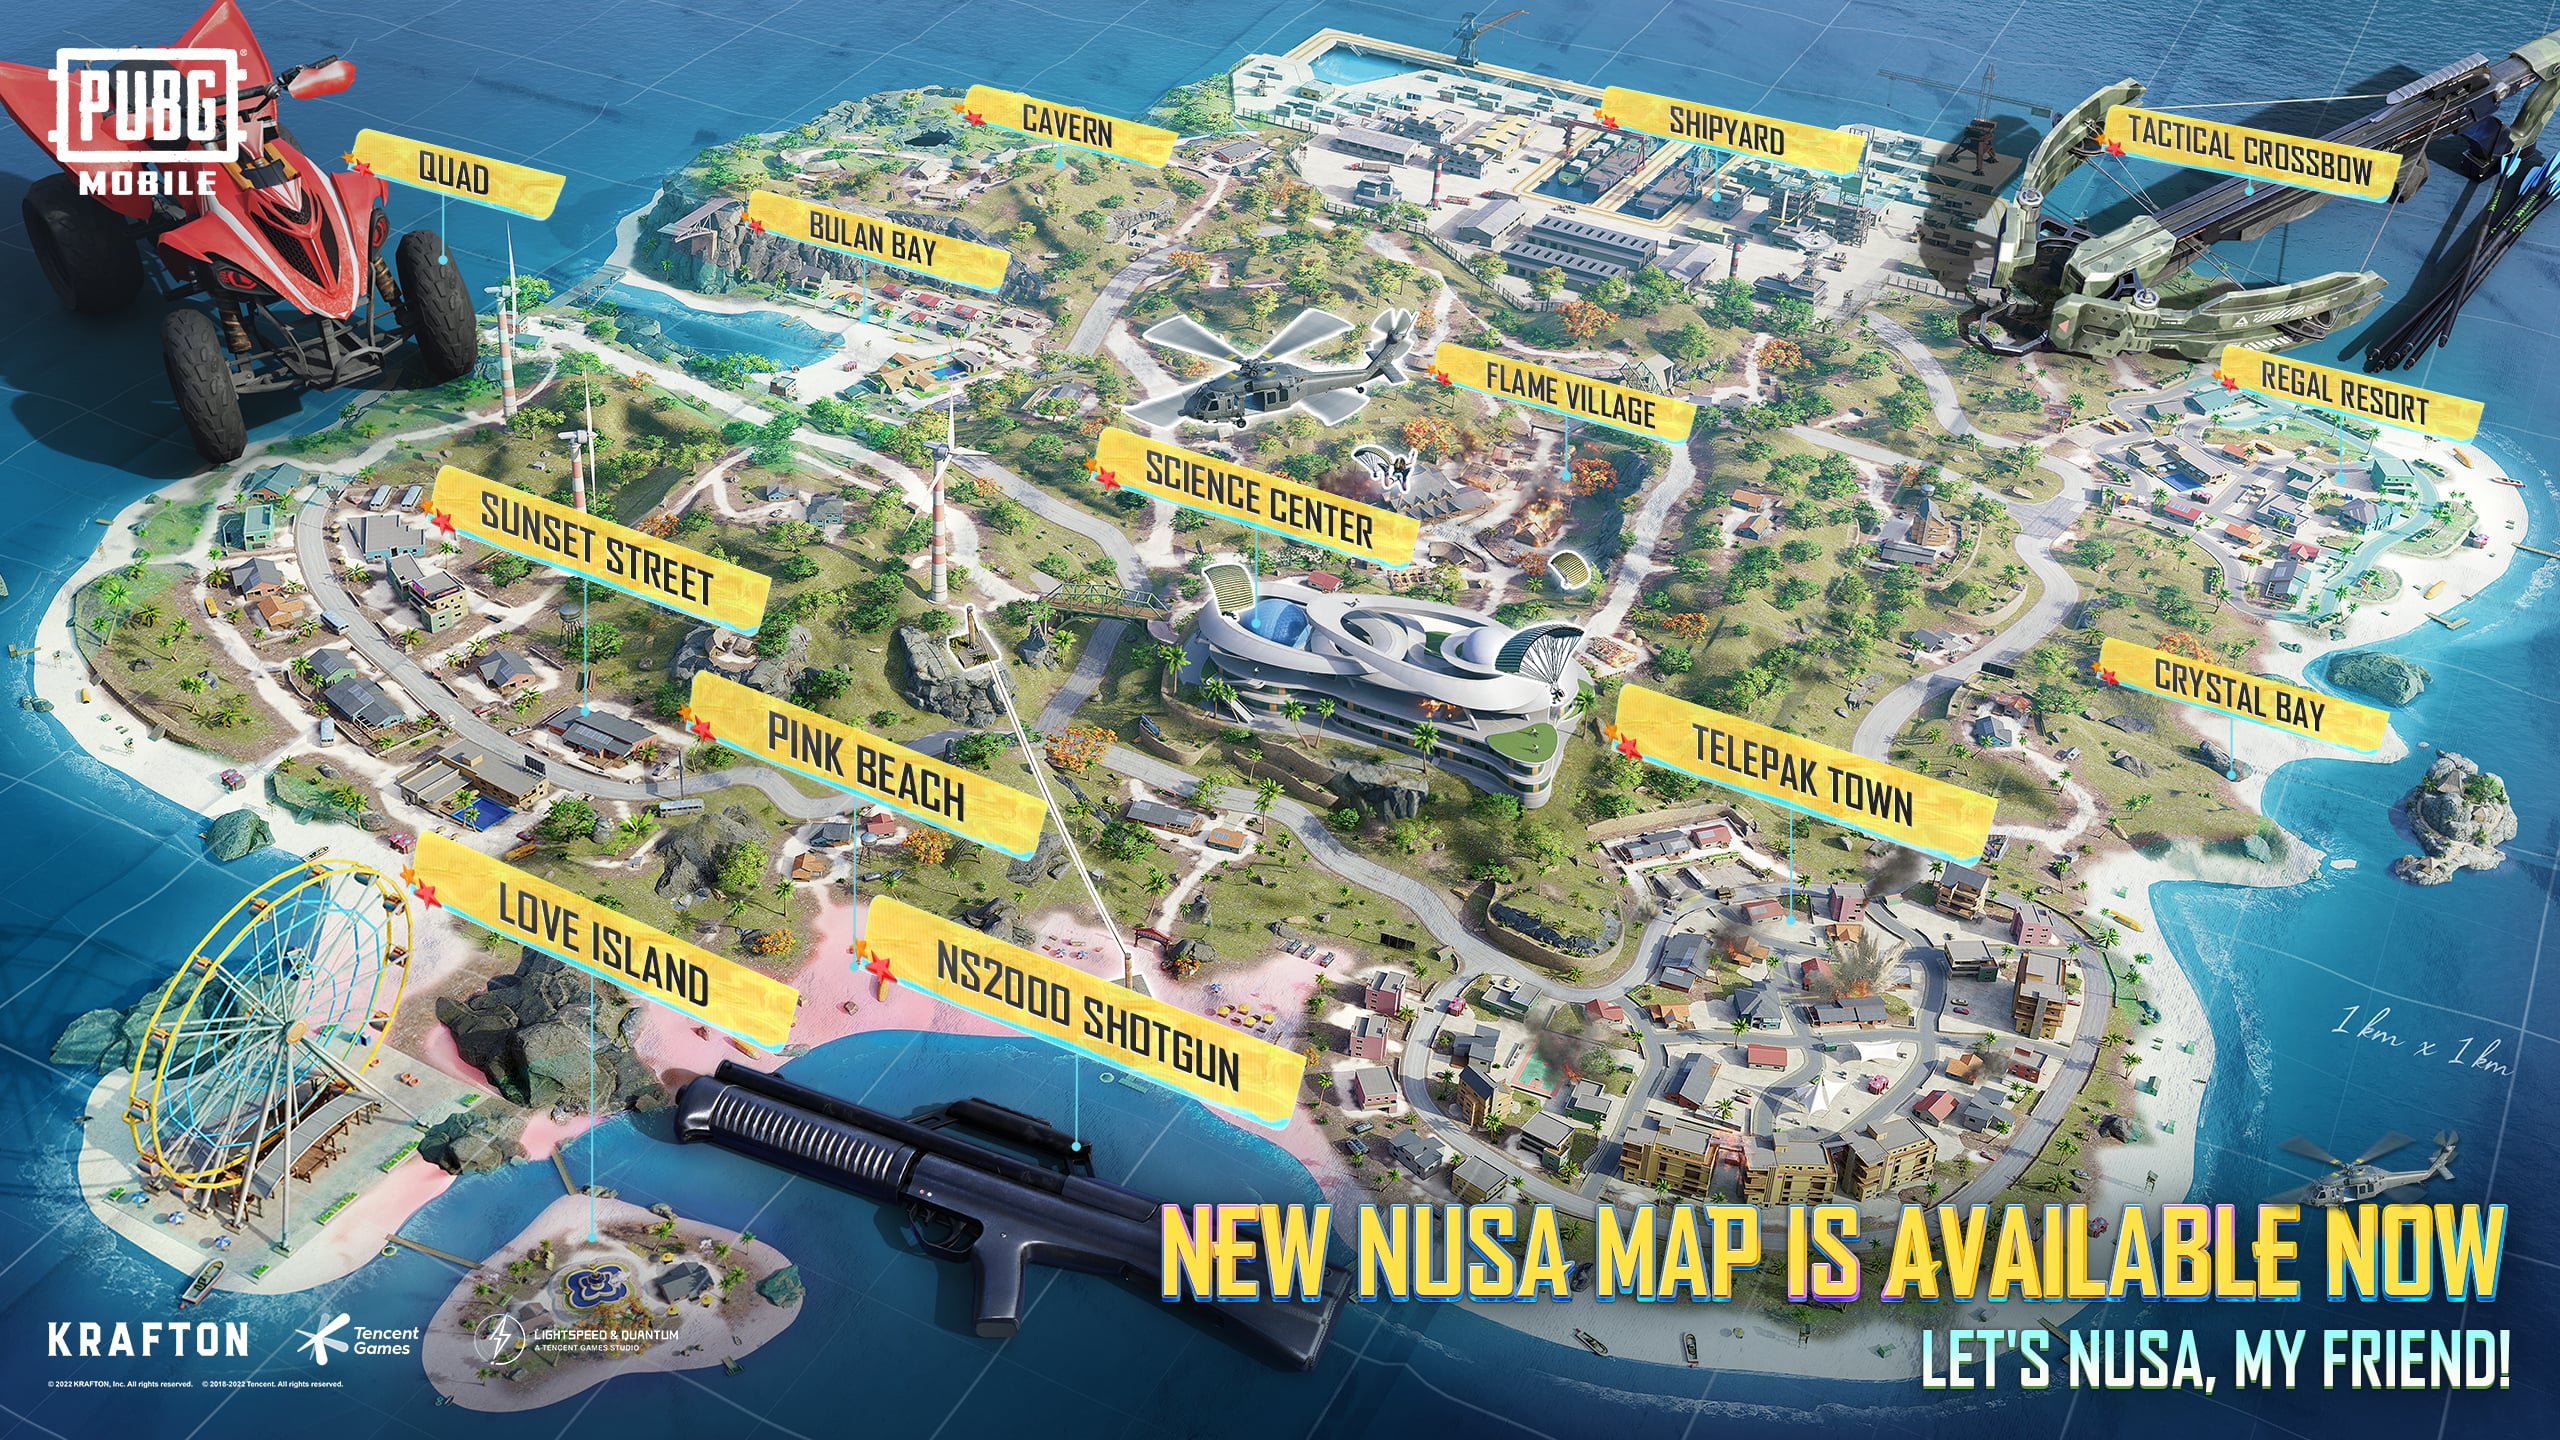 Vị trí tốt nhất: Thưởng thức hình ảnh về vị trí tốt nhất của Nusa để tìm ra điểm đến lý tưởng nhất cho chuyến du lịch của mình.